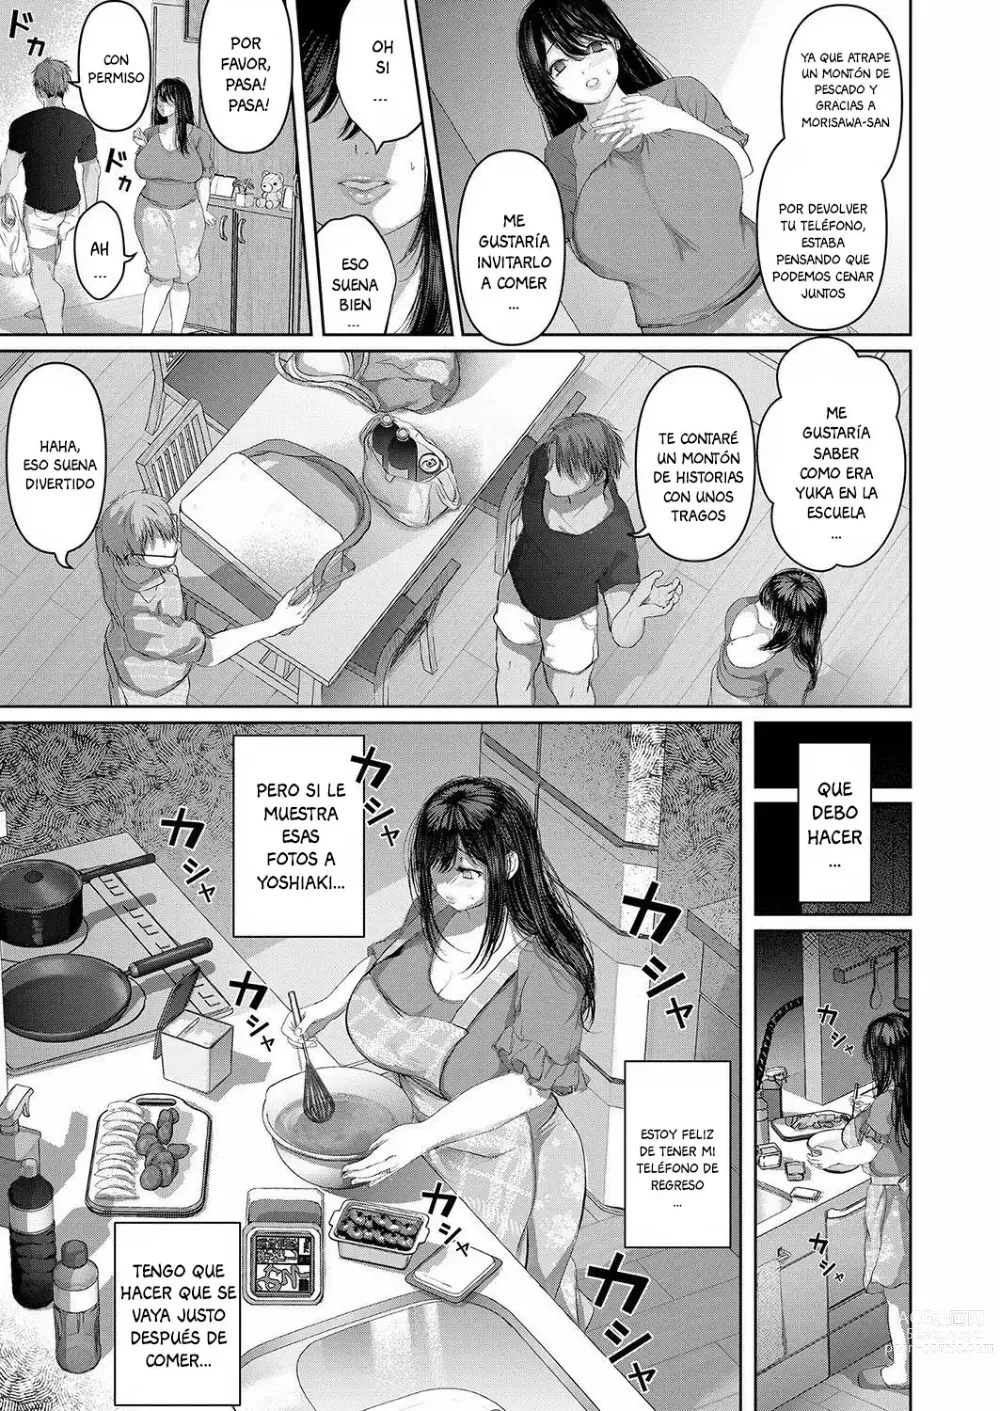 Page 7 of manga Manatsu - Nettaiya